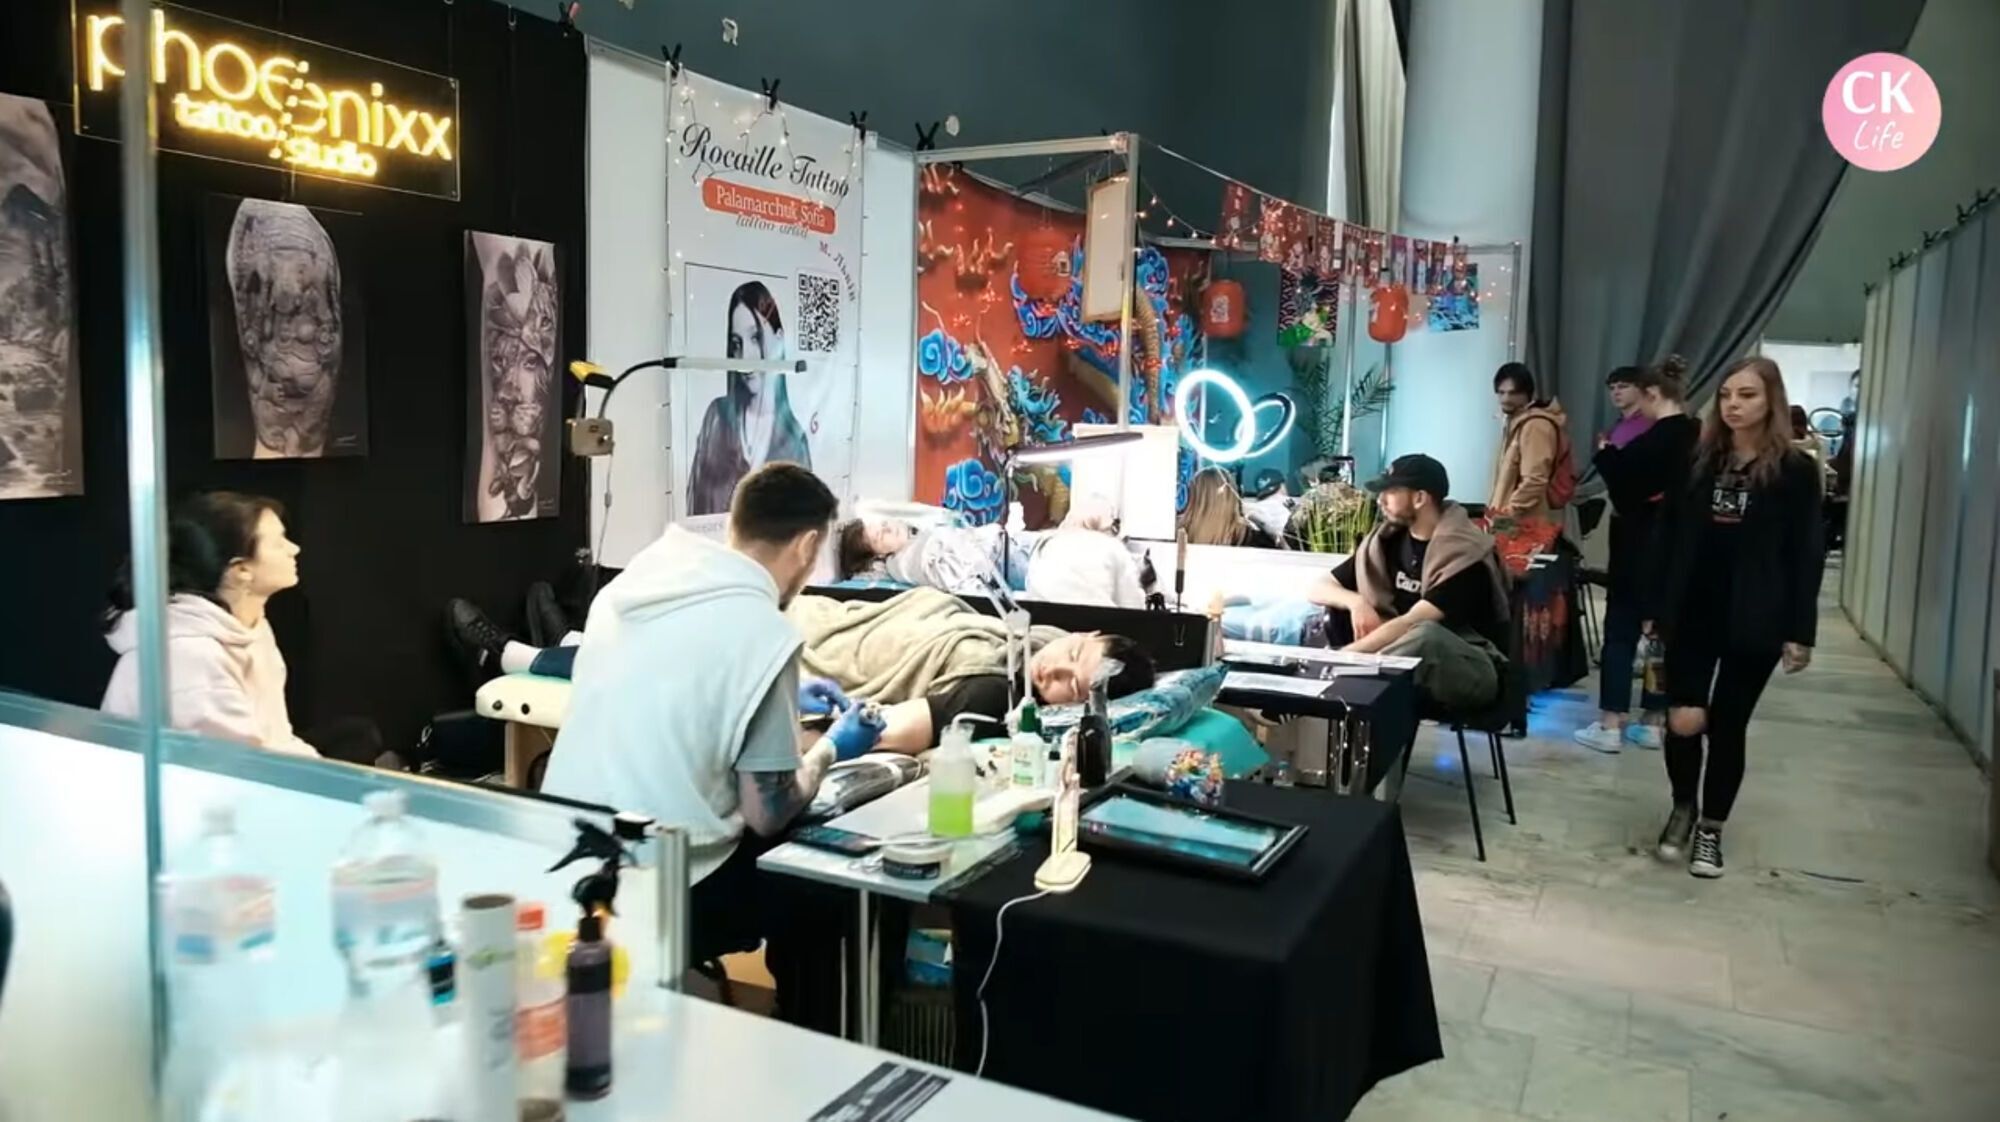 Соревнования тату-мастеров, dj-сеты и маркеты: журналисты СК Лайф посетили масштабное арт-событие (видео)